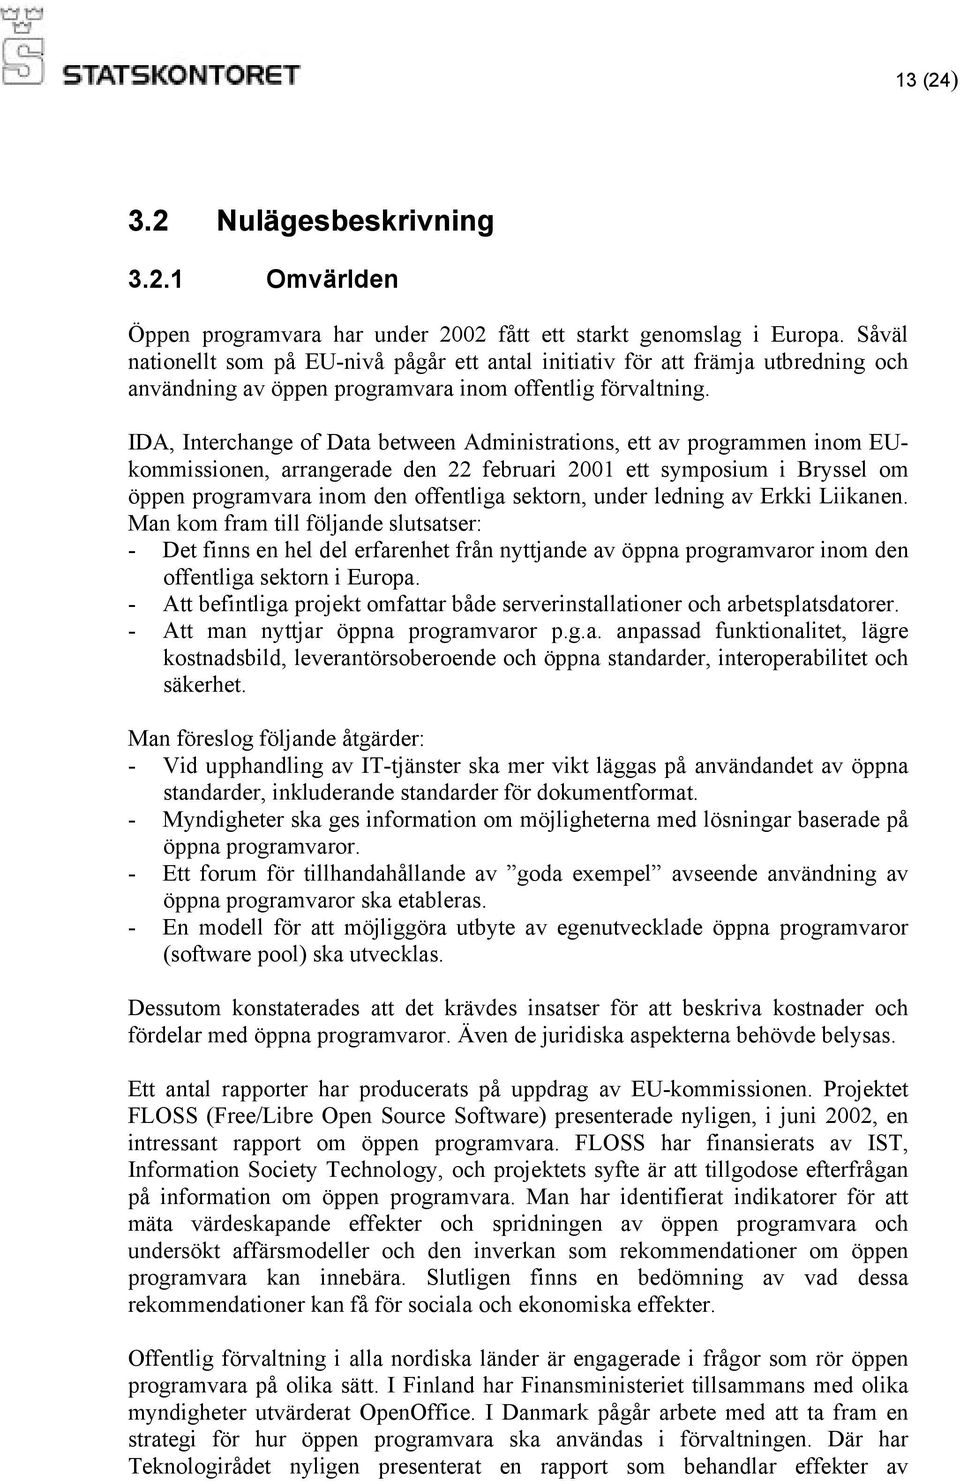 IDA, Interchange of Data between Administrations, ett av programmen inom EUkommissionen, arrangerade den 22 februari 2001 ett symposium i Bryssel om öppen programvara inom den offentliga sektorn,